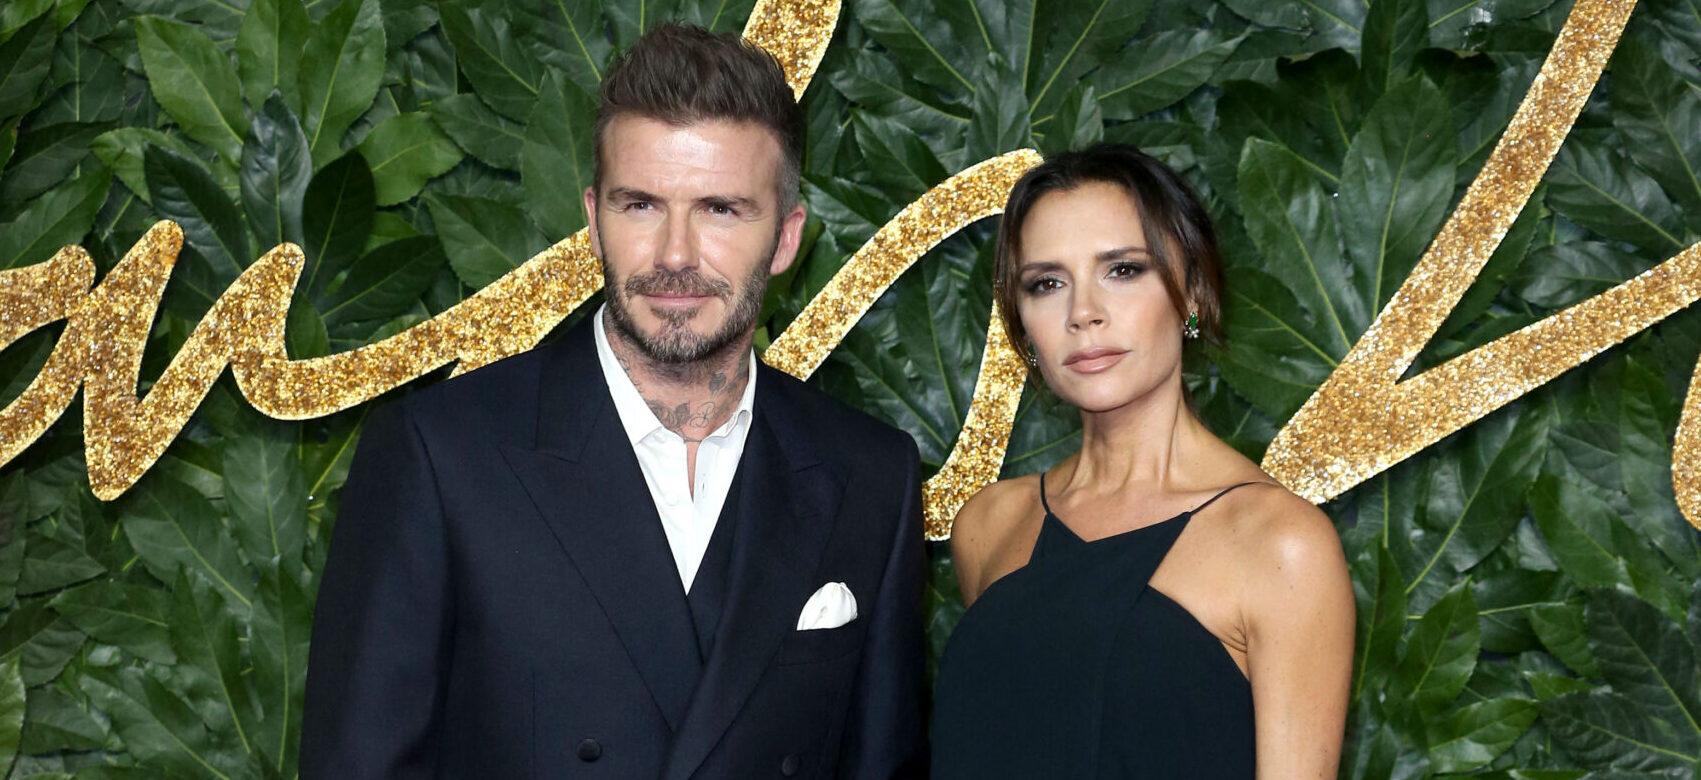 David Beckham Serenades ‘Most Amazing Wife’ Victoria Beckham On 49th Birthday